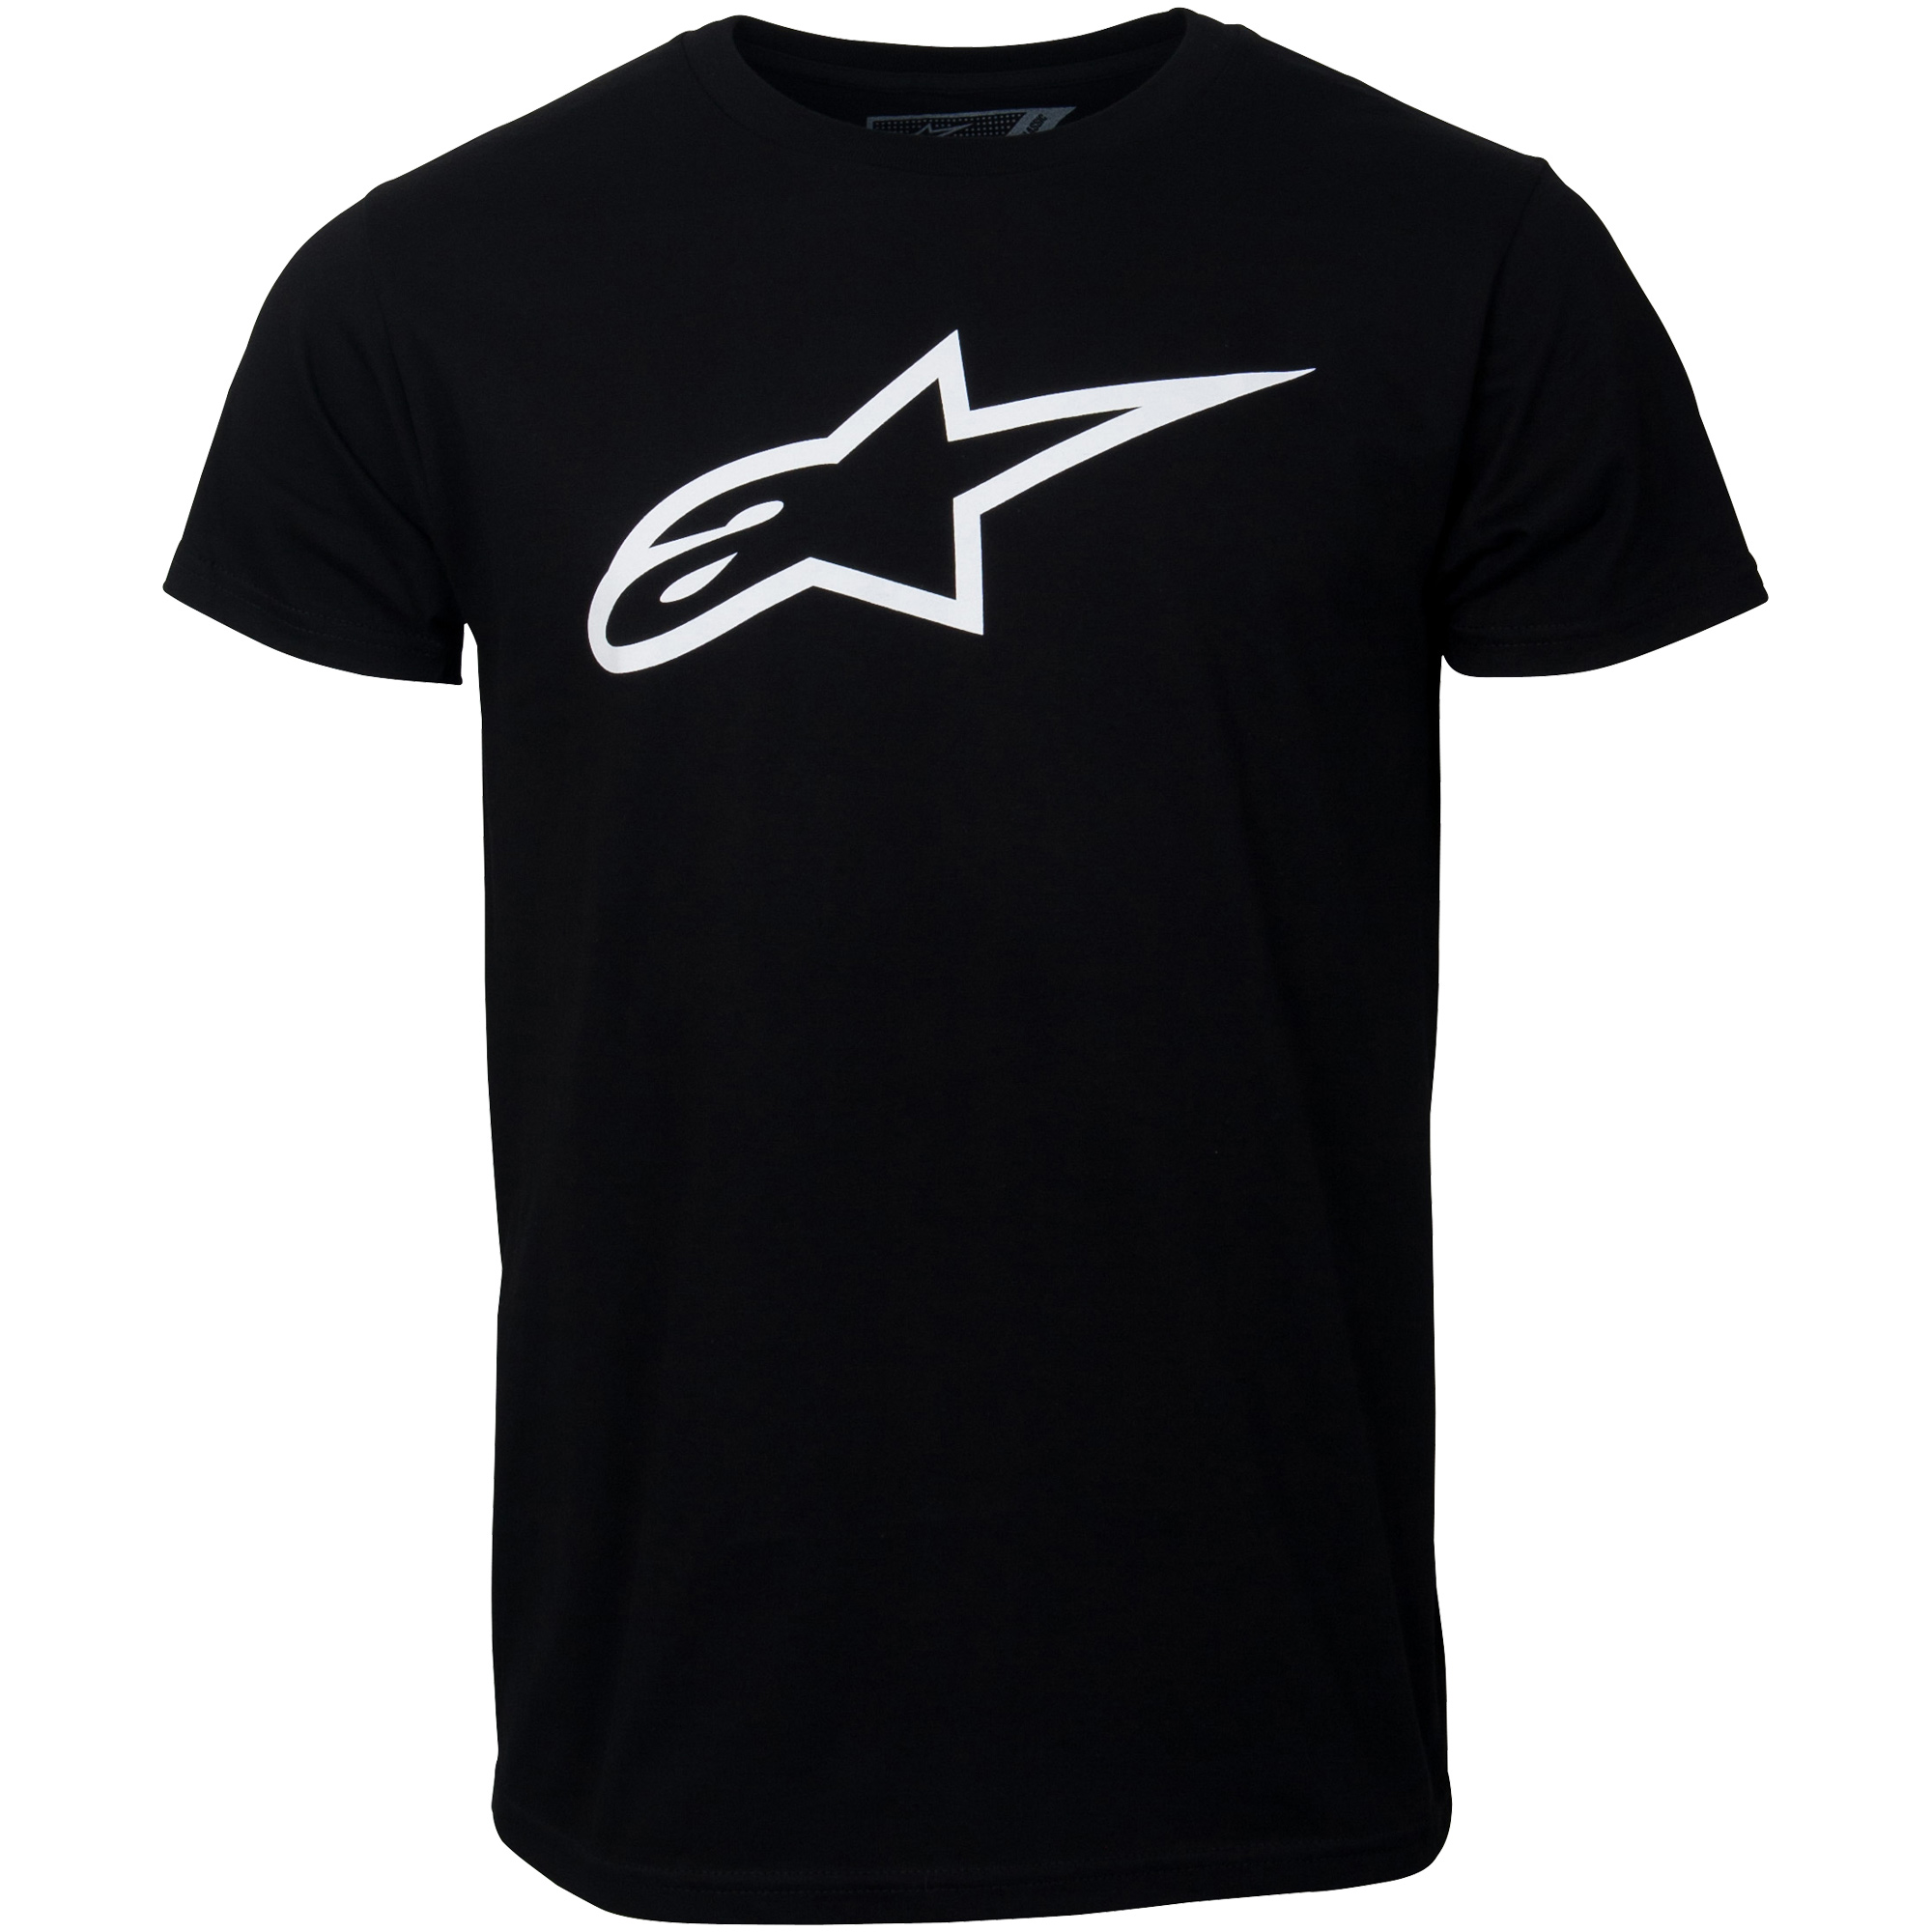 Alpinestars T-Shirt "Ageless schwarz-weiß" - schwarz